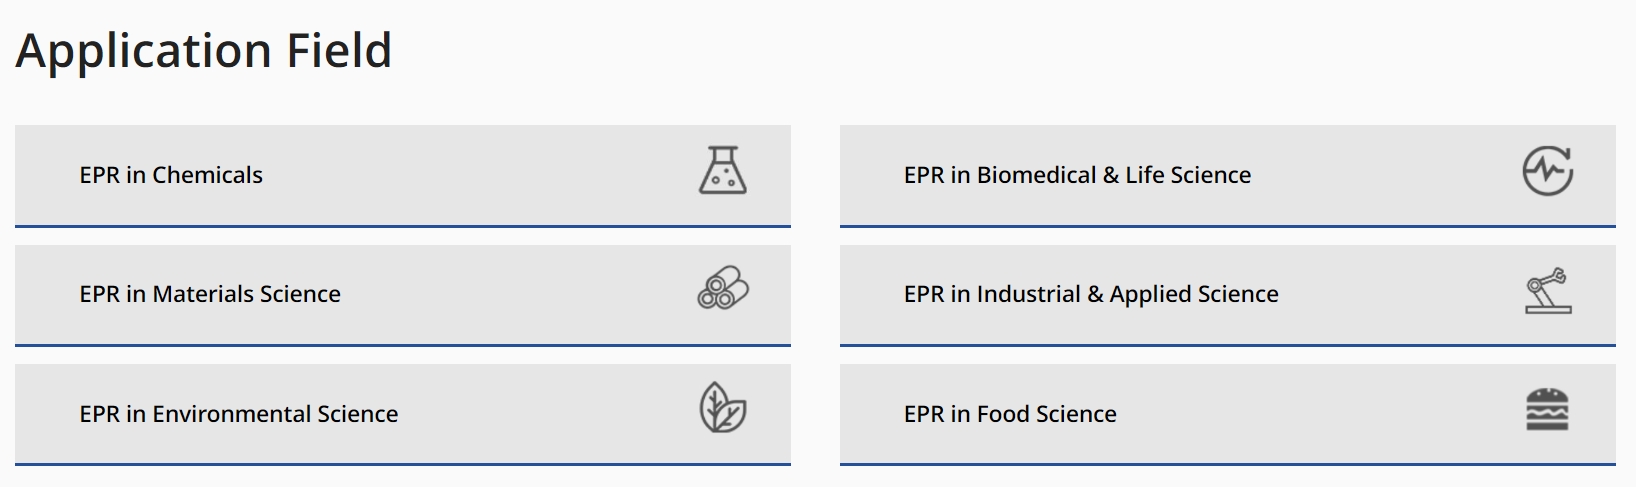 EPR application fields